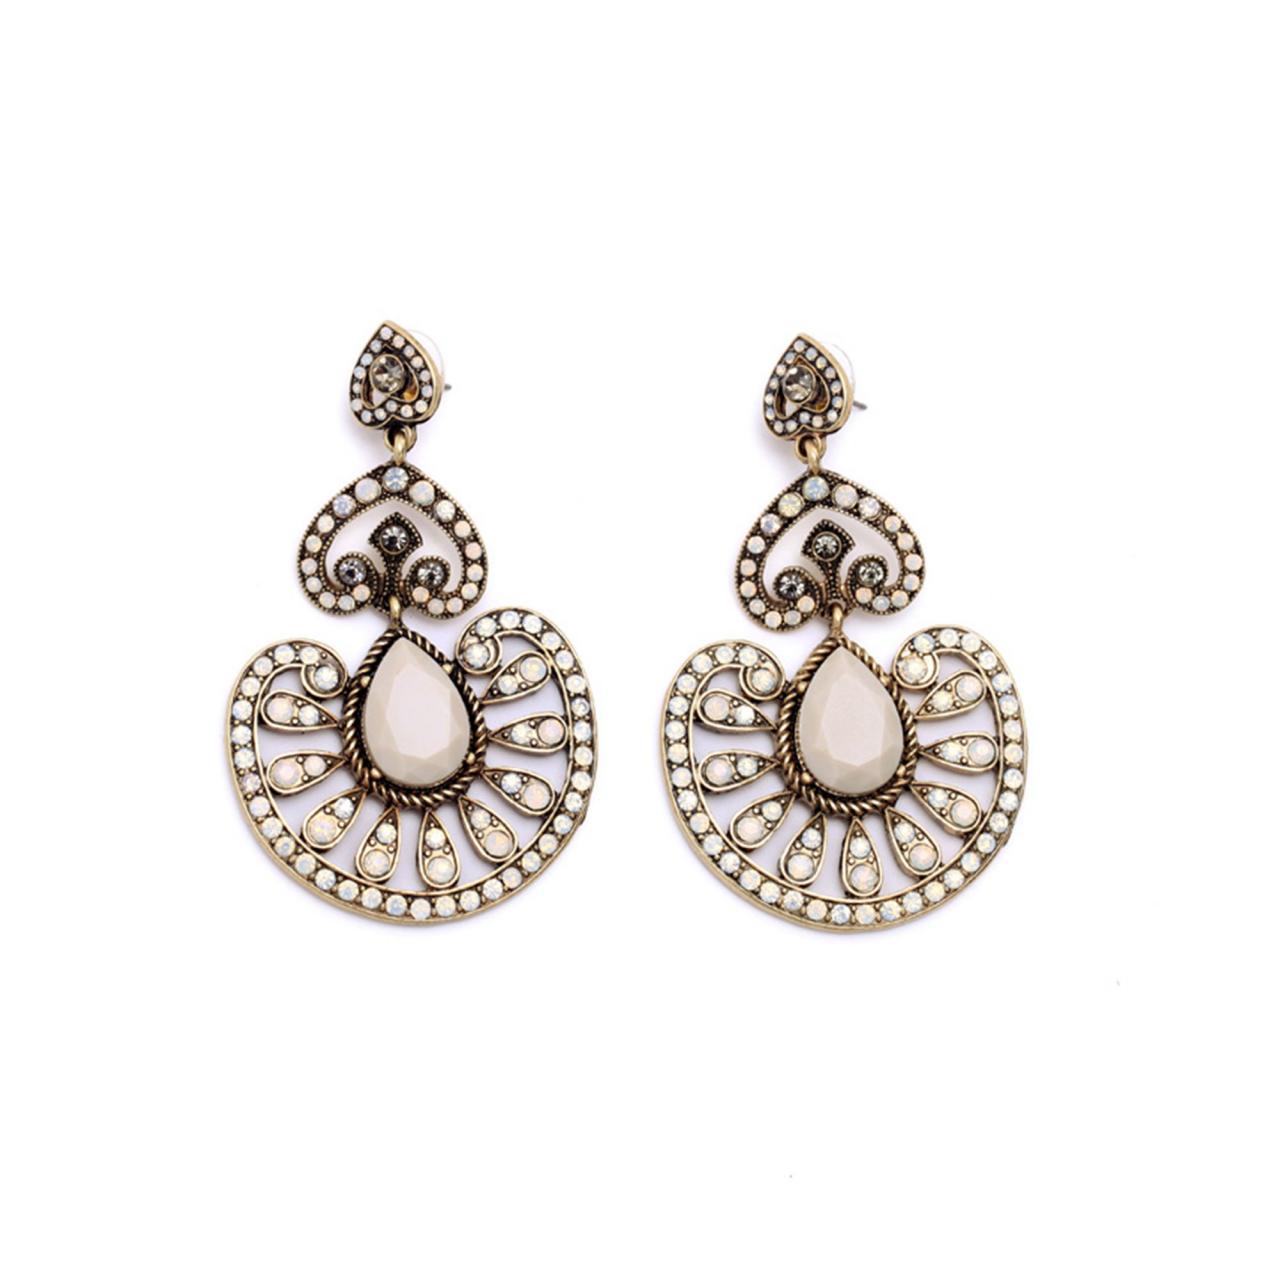 Boho Earrings / Statement Jewelry / Statement Earrings / Queen Earrings ...